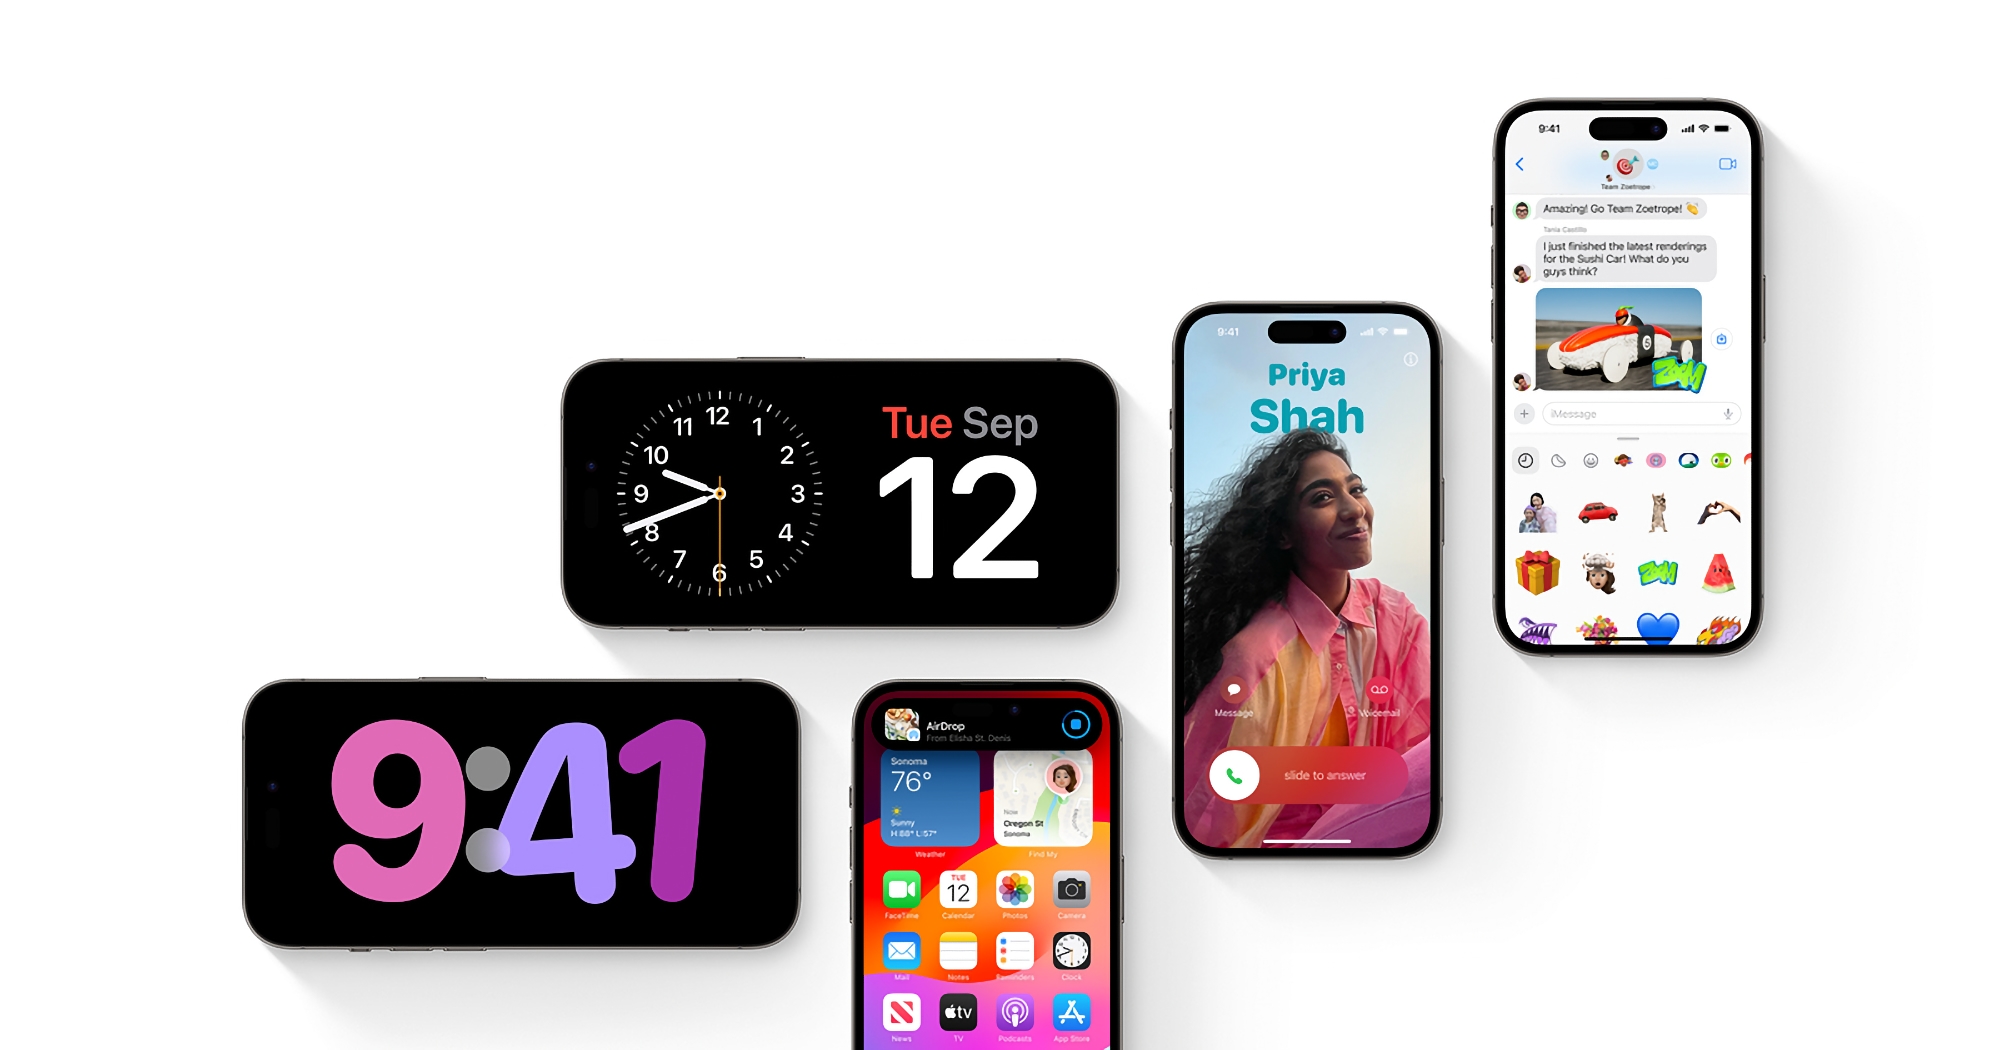 På grund av buggar i iOS 17, macOS 14, watchOS 10 och tvOS 17: Apple har försenat utvecklingen av iOS 18 och andra nya operativsystem